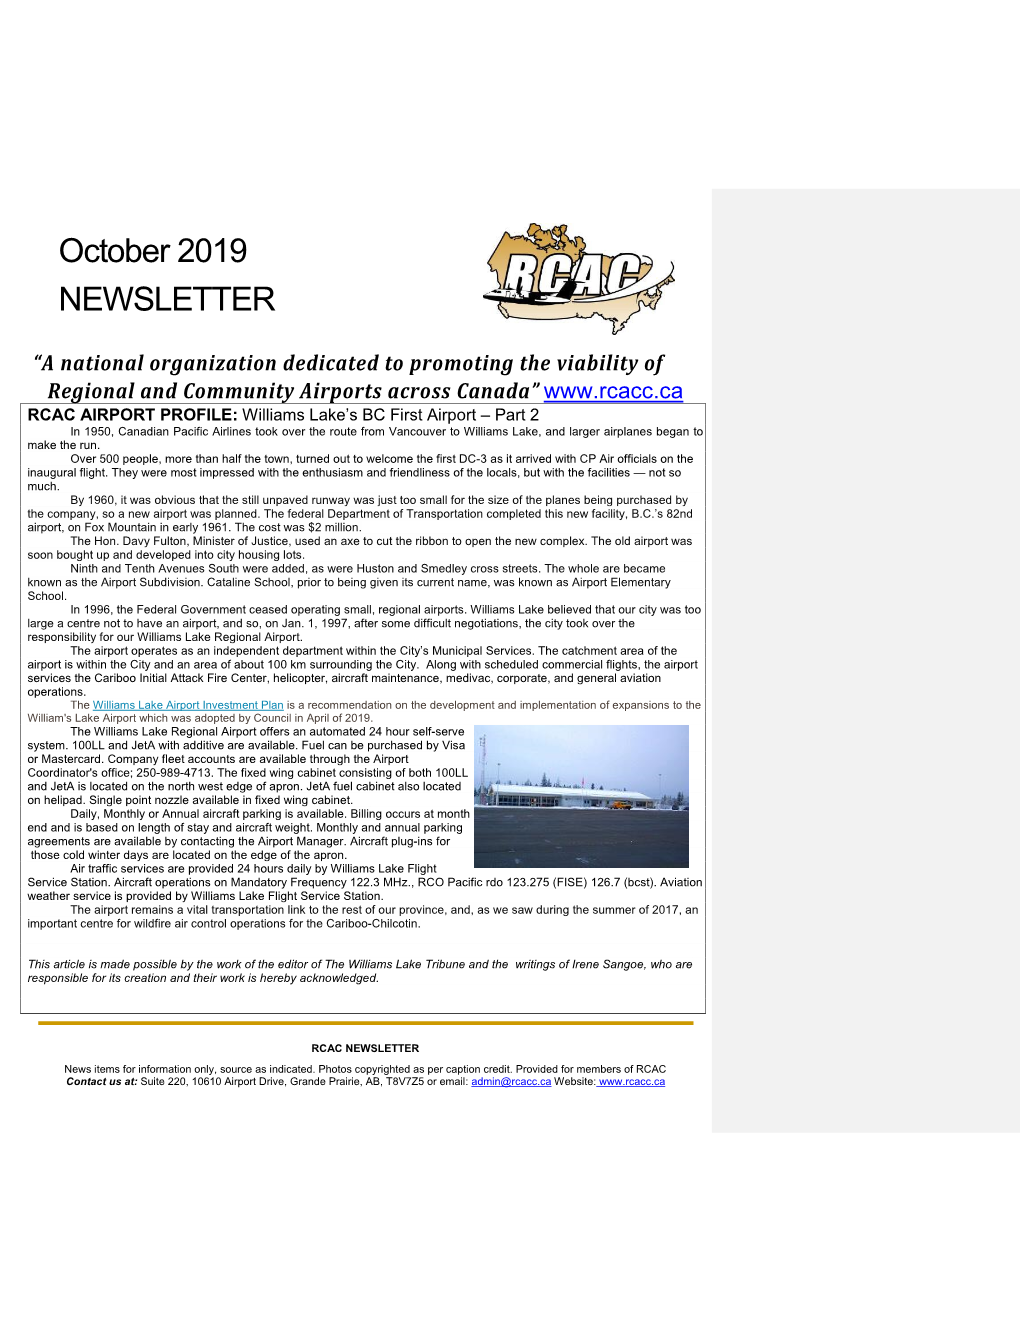 October 2019 NEWSLETTER